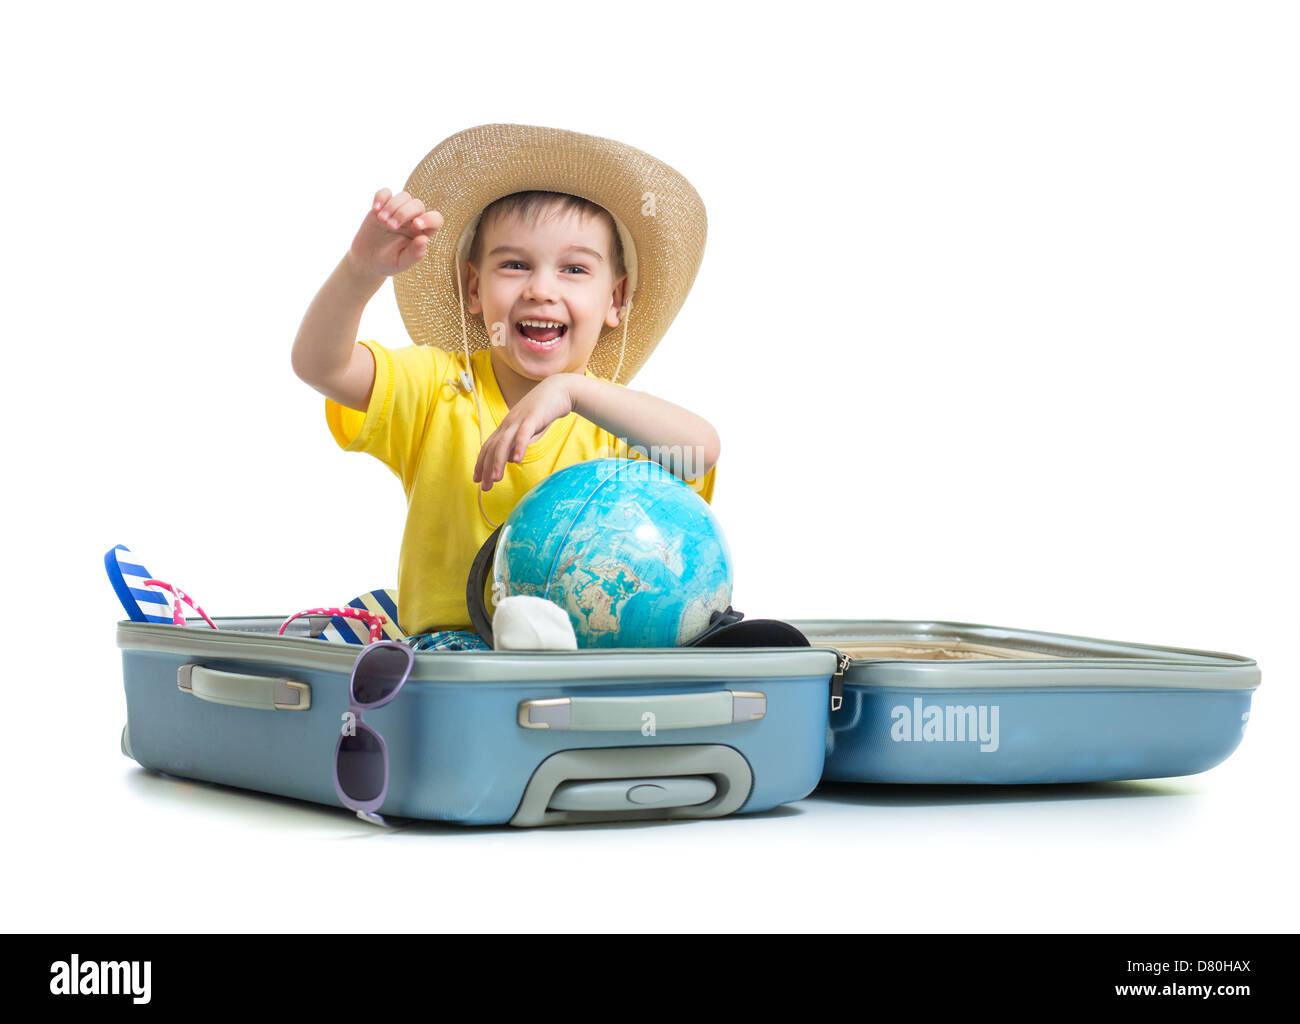 Happy kid sitting in suitcase préparé pour locations Banque D'Images